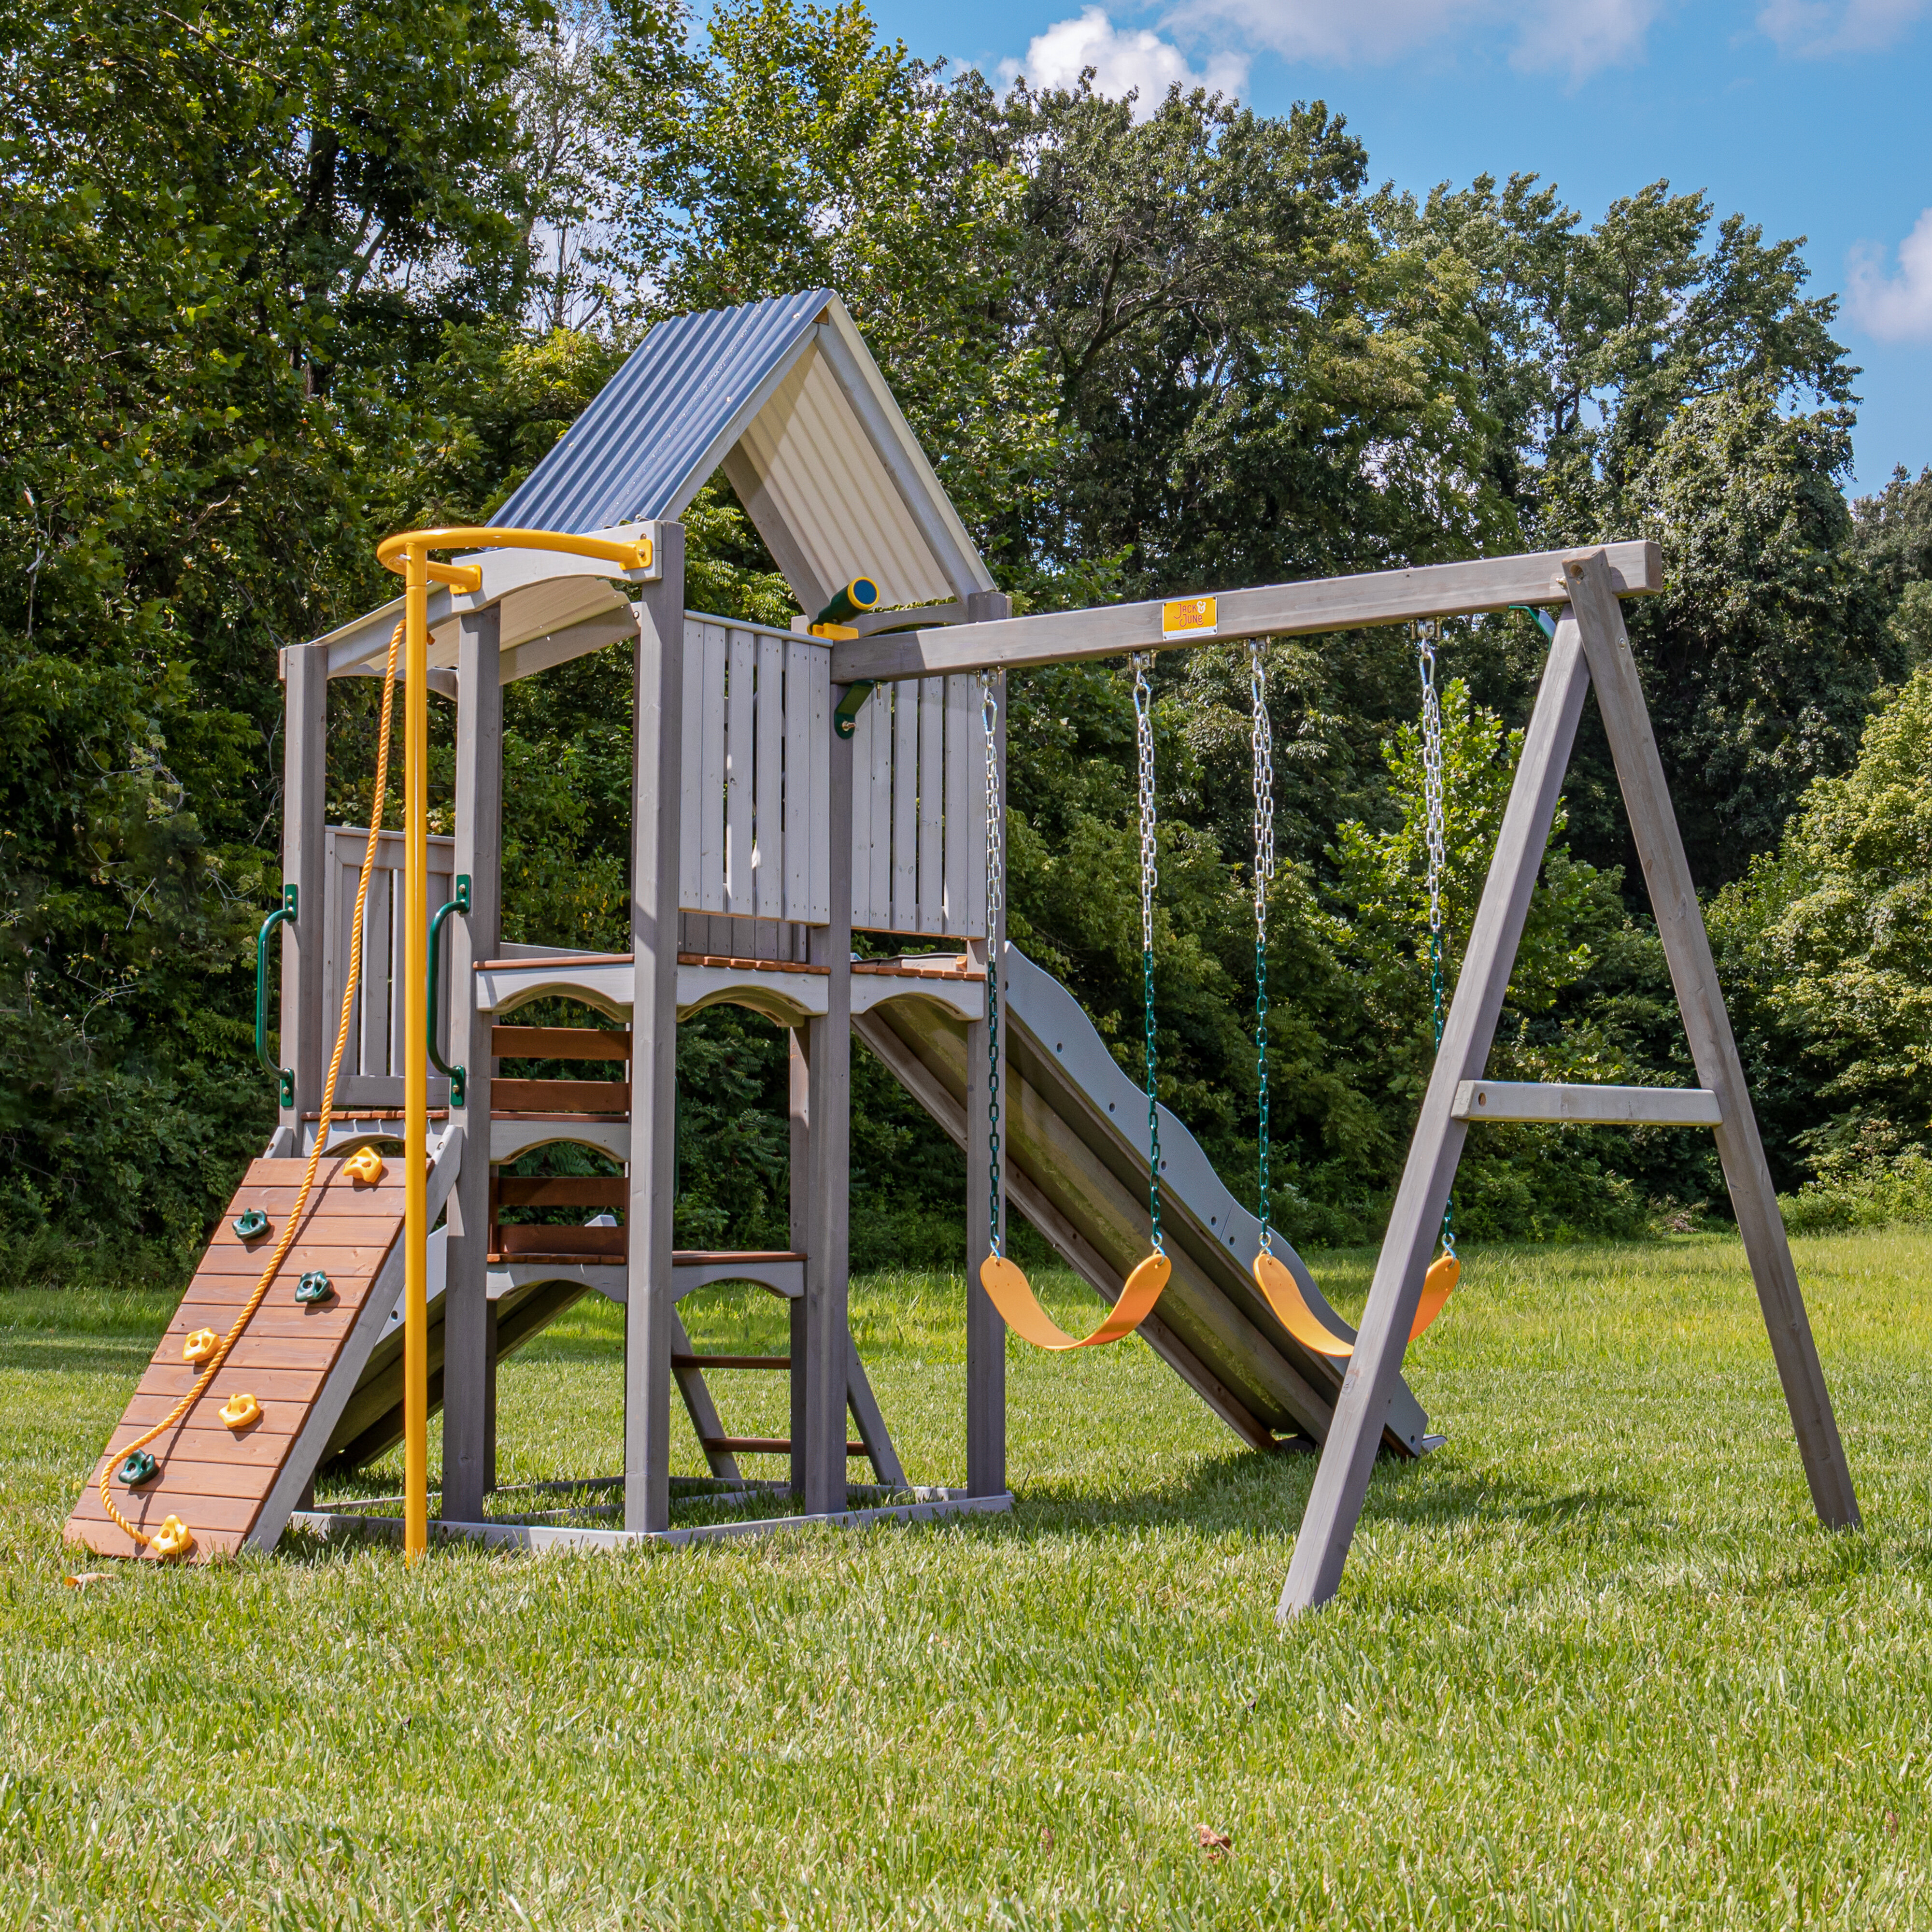 5 IN 1 Fun Swing Set Kids Playground Slide Outdoor Backyard Space Saver Playset 